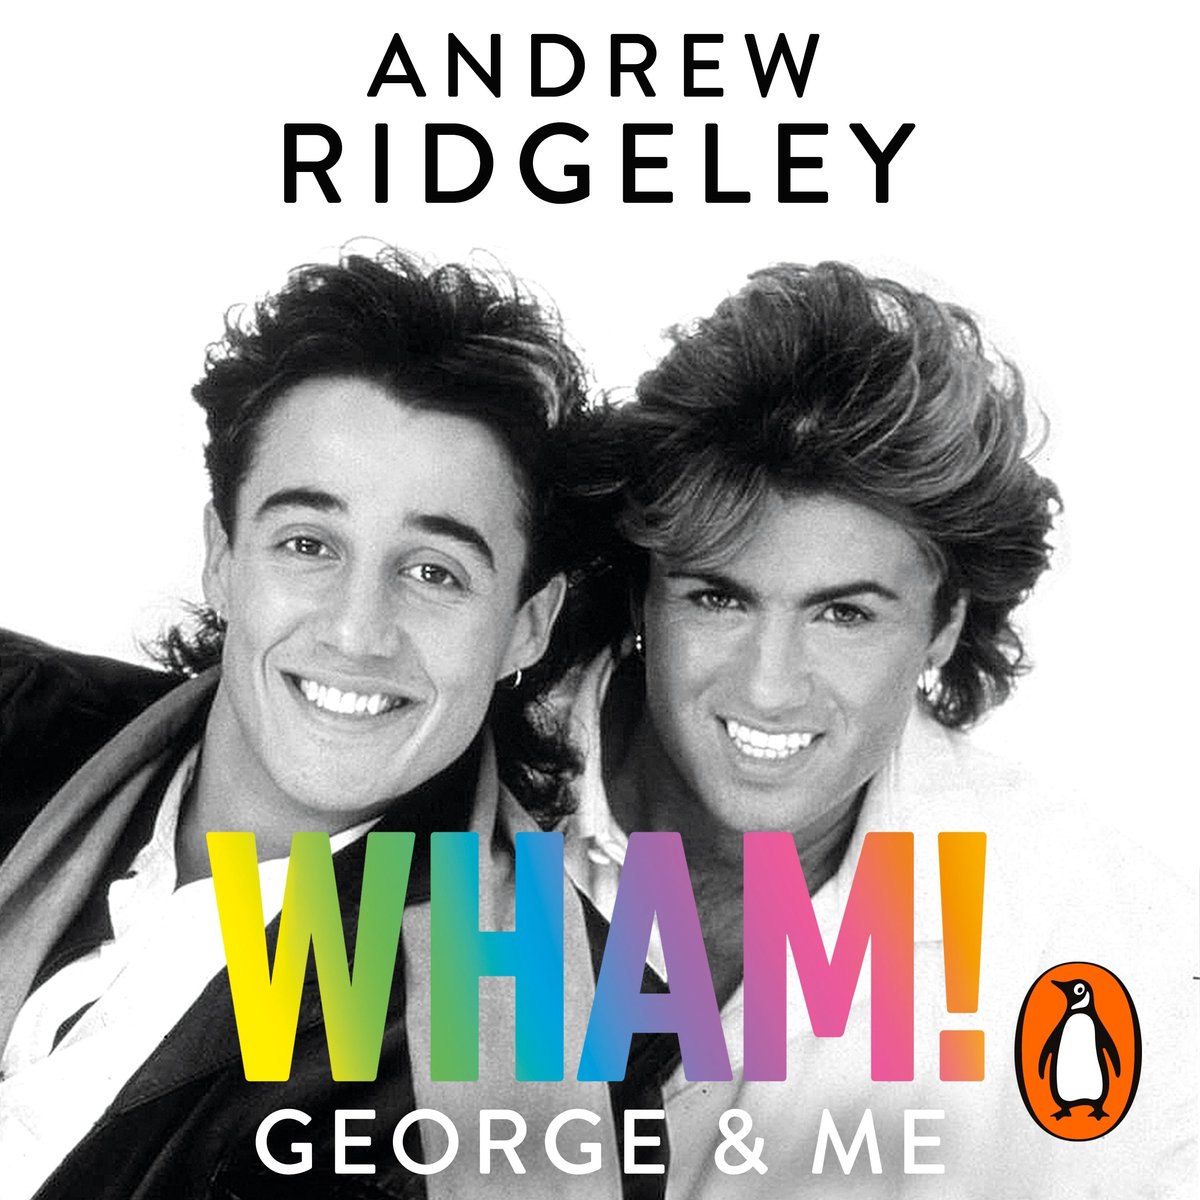 Wham! George & Me - Andrew Ridgeley